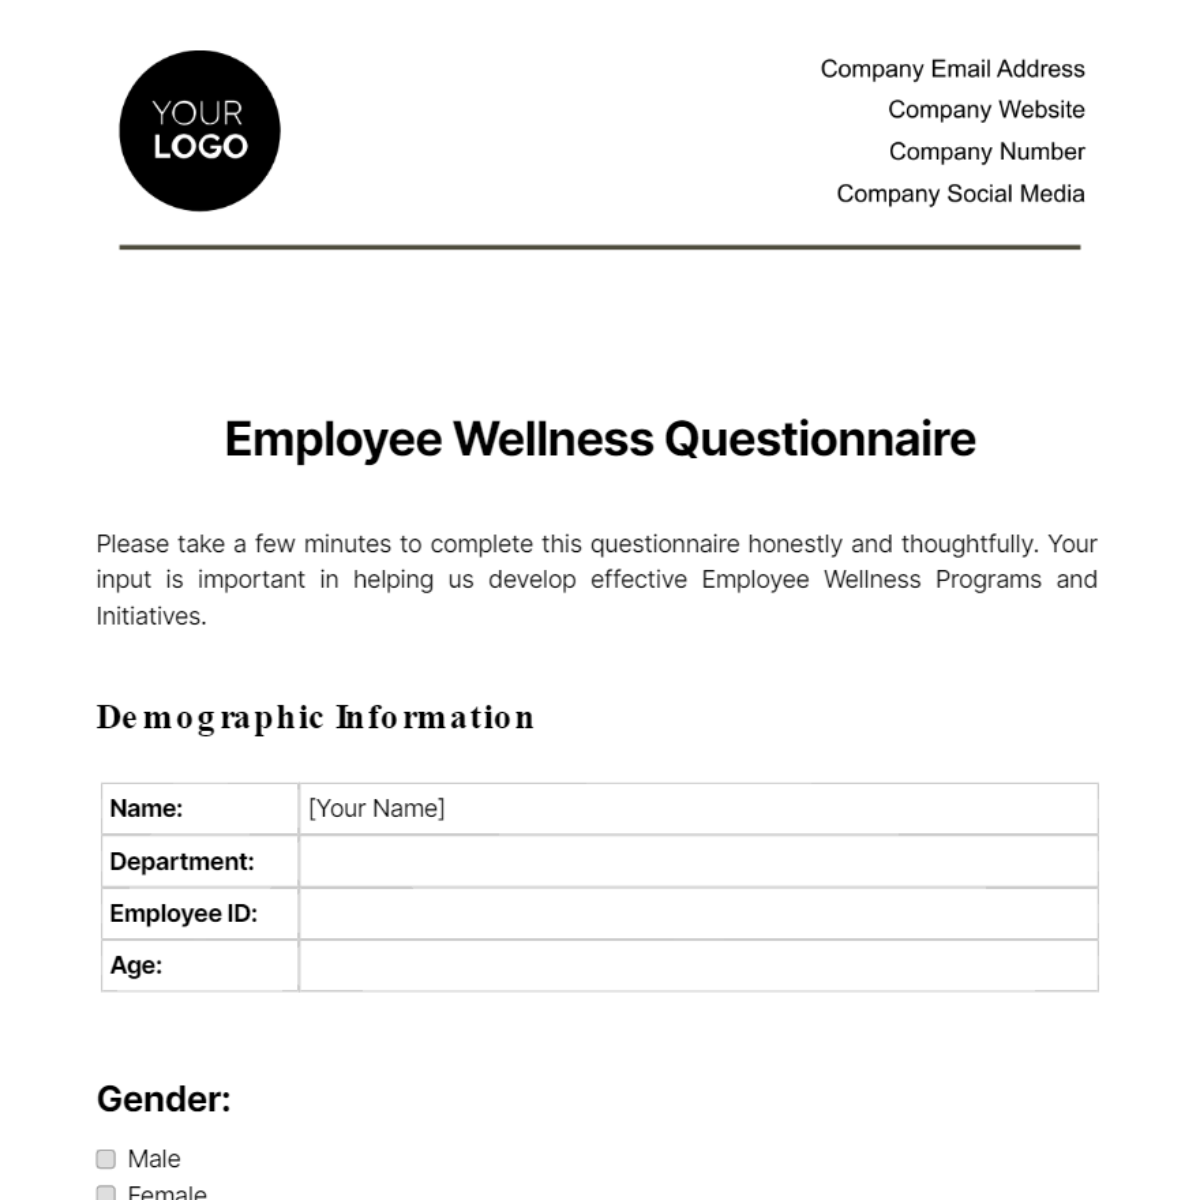 Employee Wellness Questionnaire Template